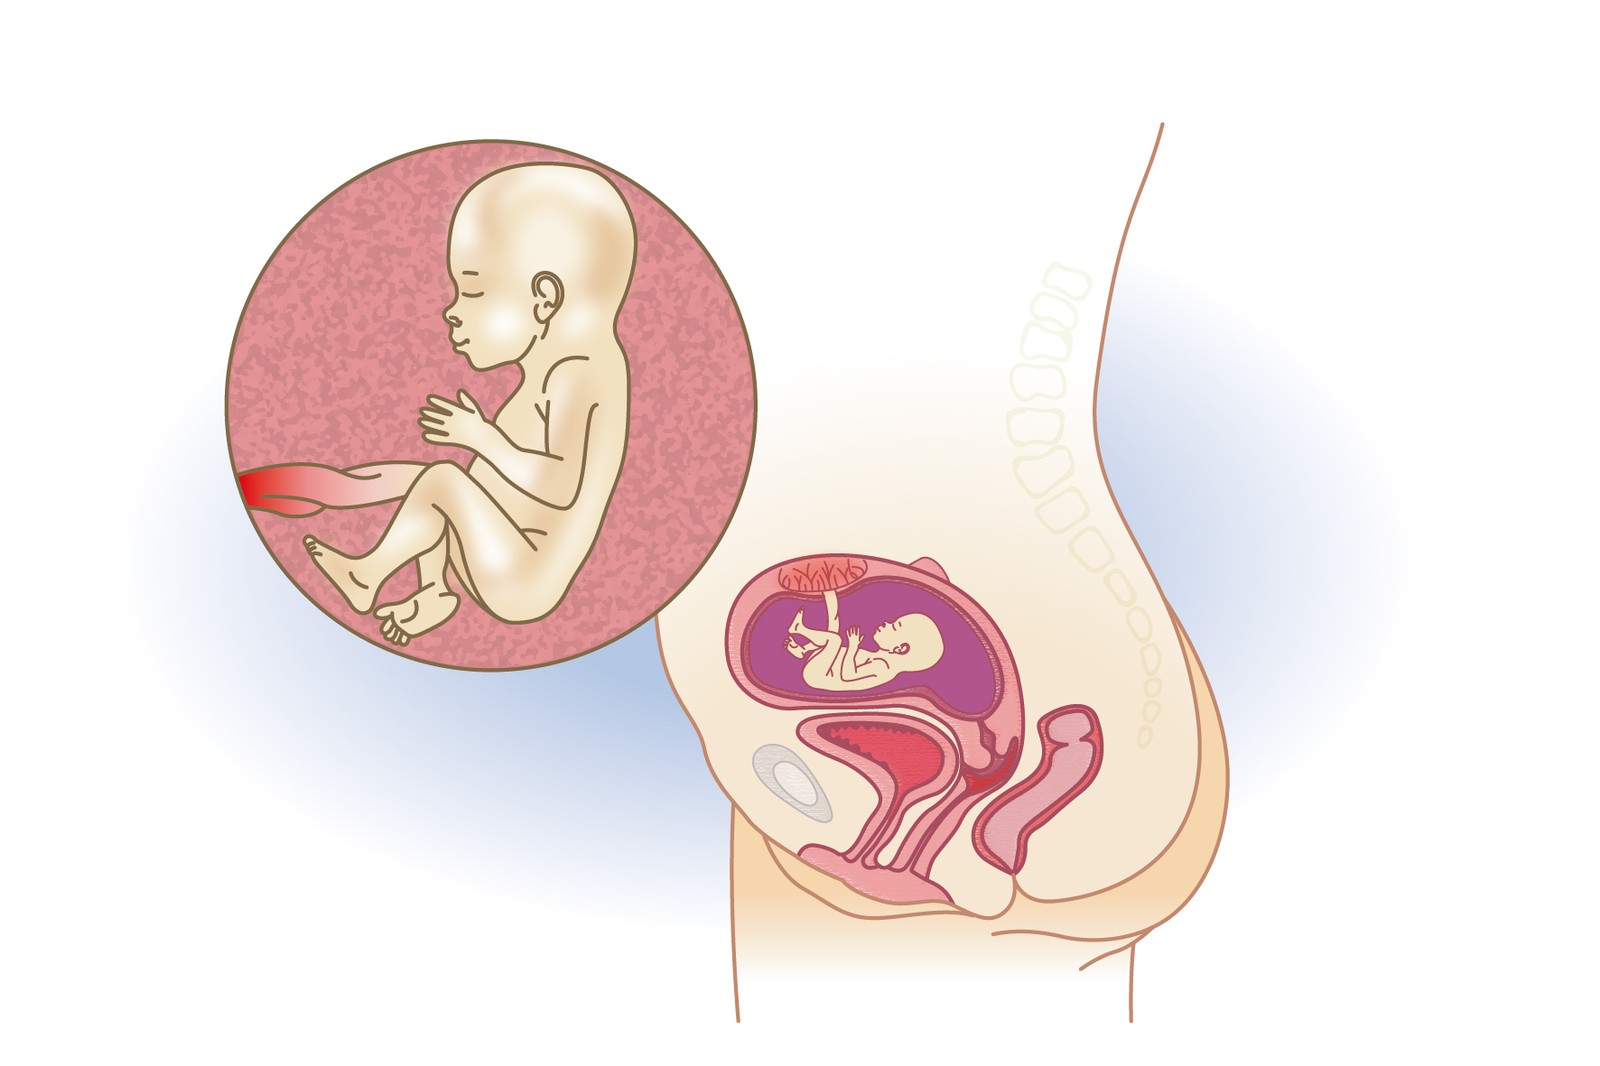 Plod v 19. týdnu těhotenství